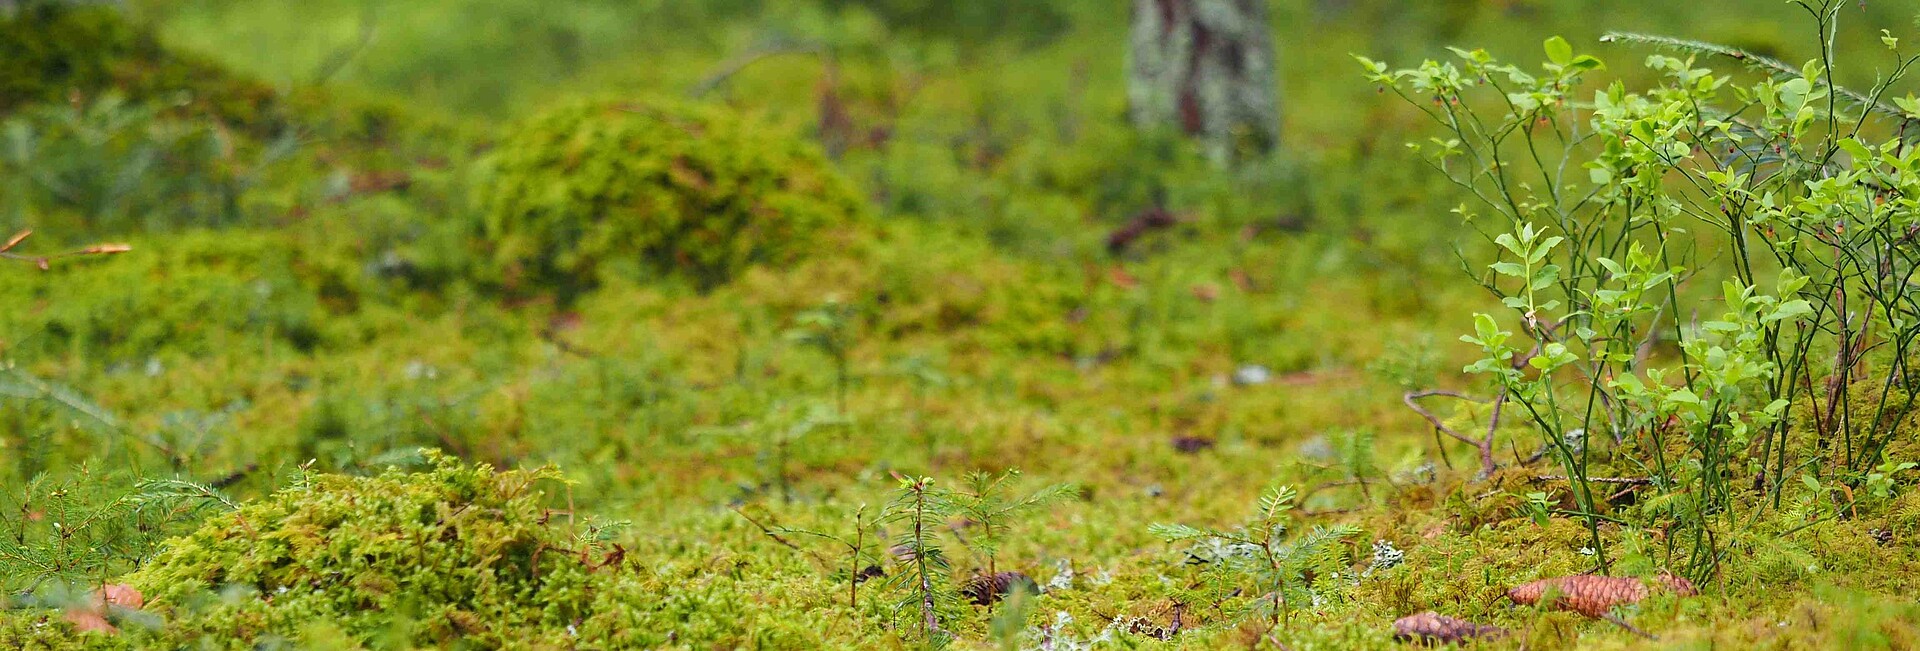 Moos- und Krautbewuchs auf Waldboden